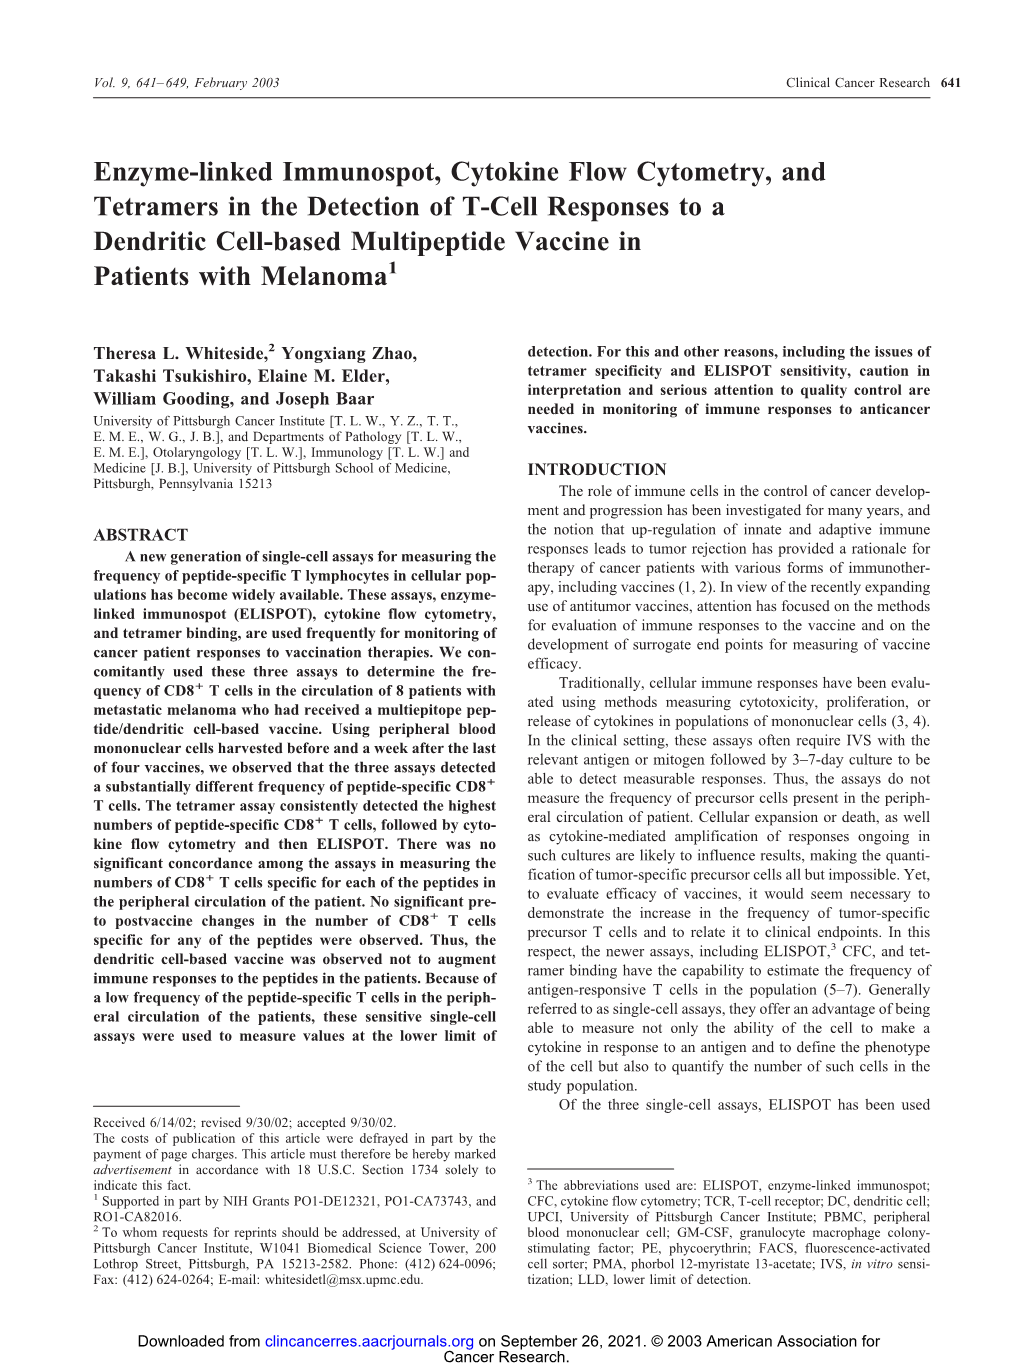 Enzyme-Linked Immunospot, Cytokine Flow Cytometry, and Tetramers In